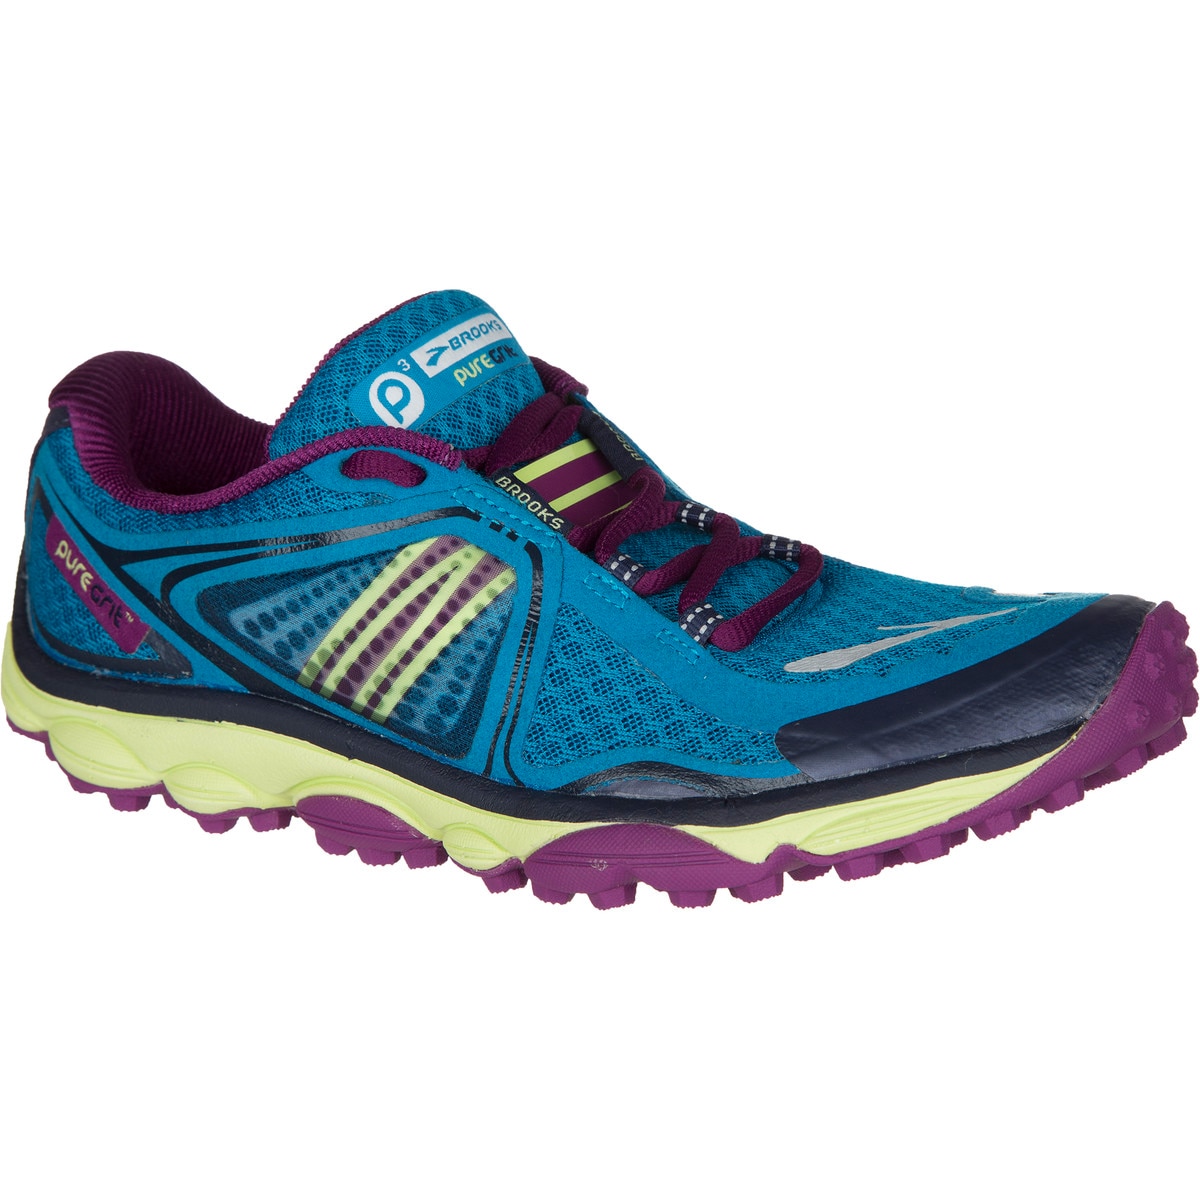 Brooks PureGrit 3 Trail Running Shoe - Women's - Footwear